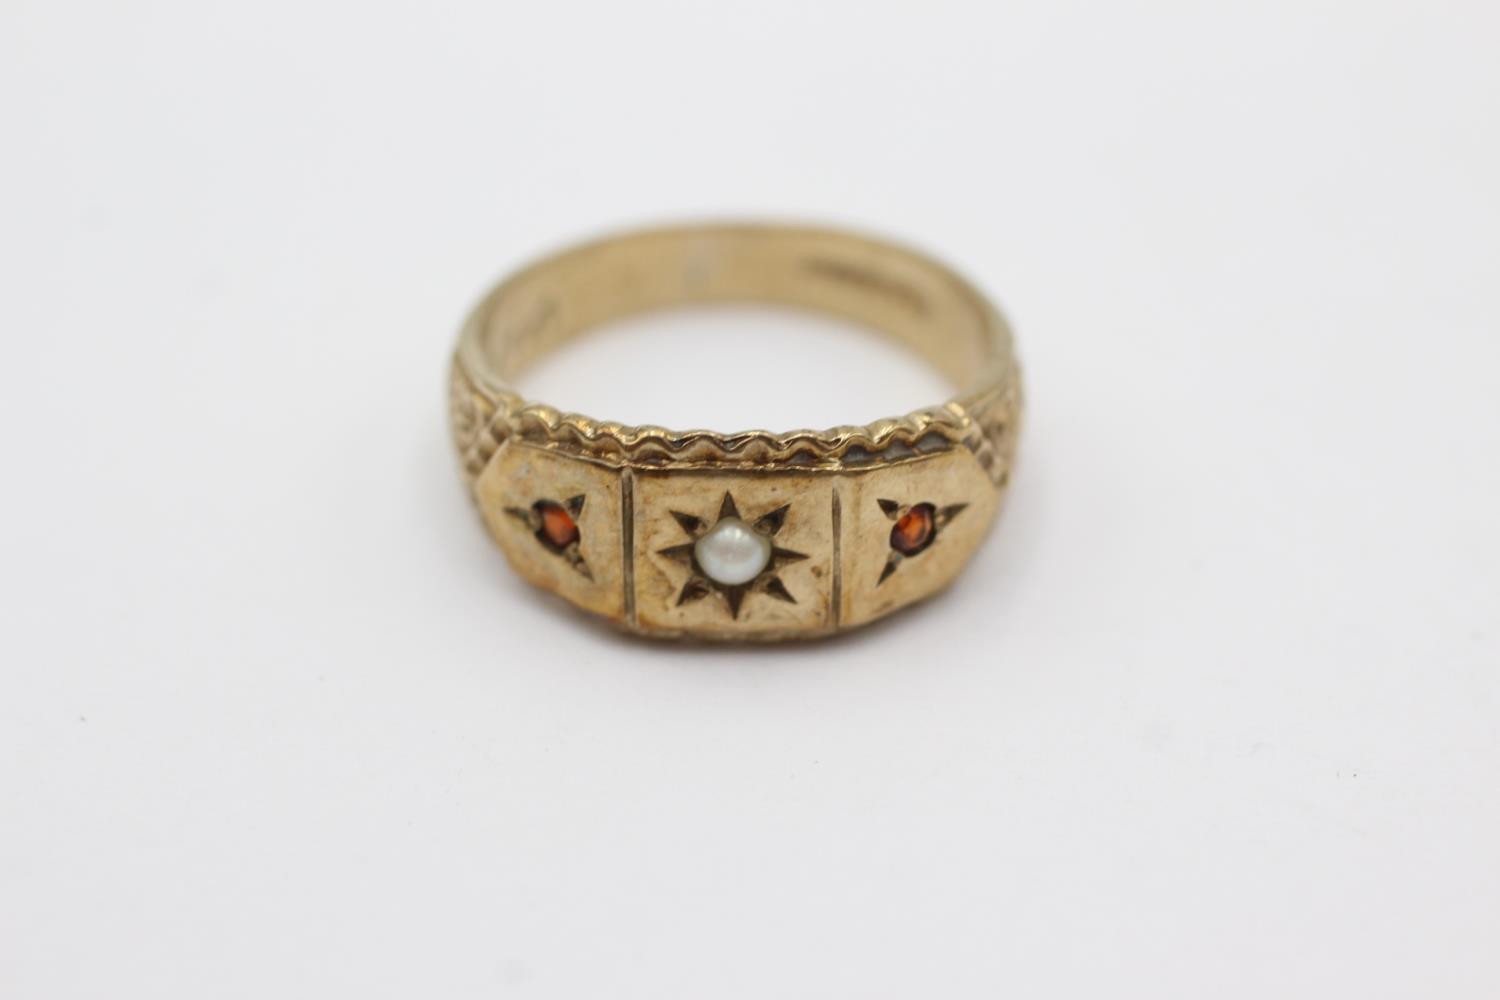 9ct gold garnet & pearl starburst ring (3.7g) Size M